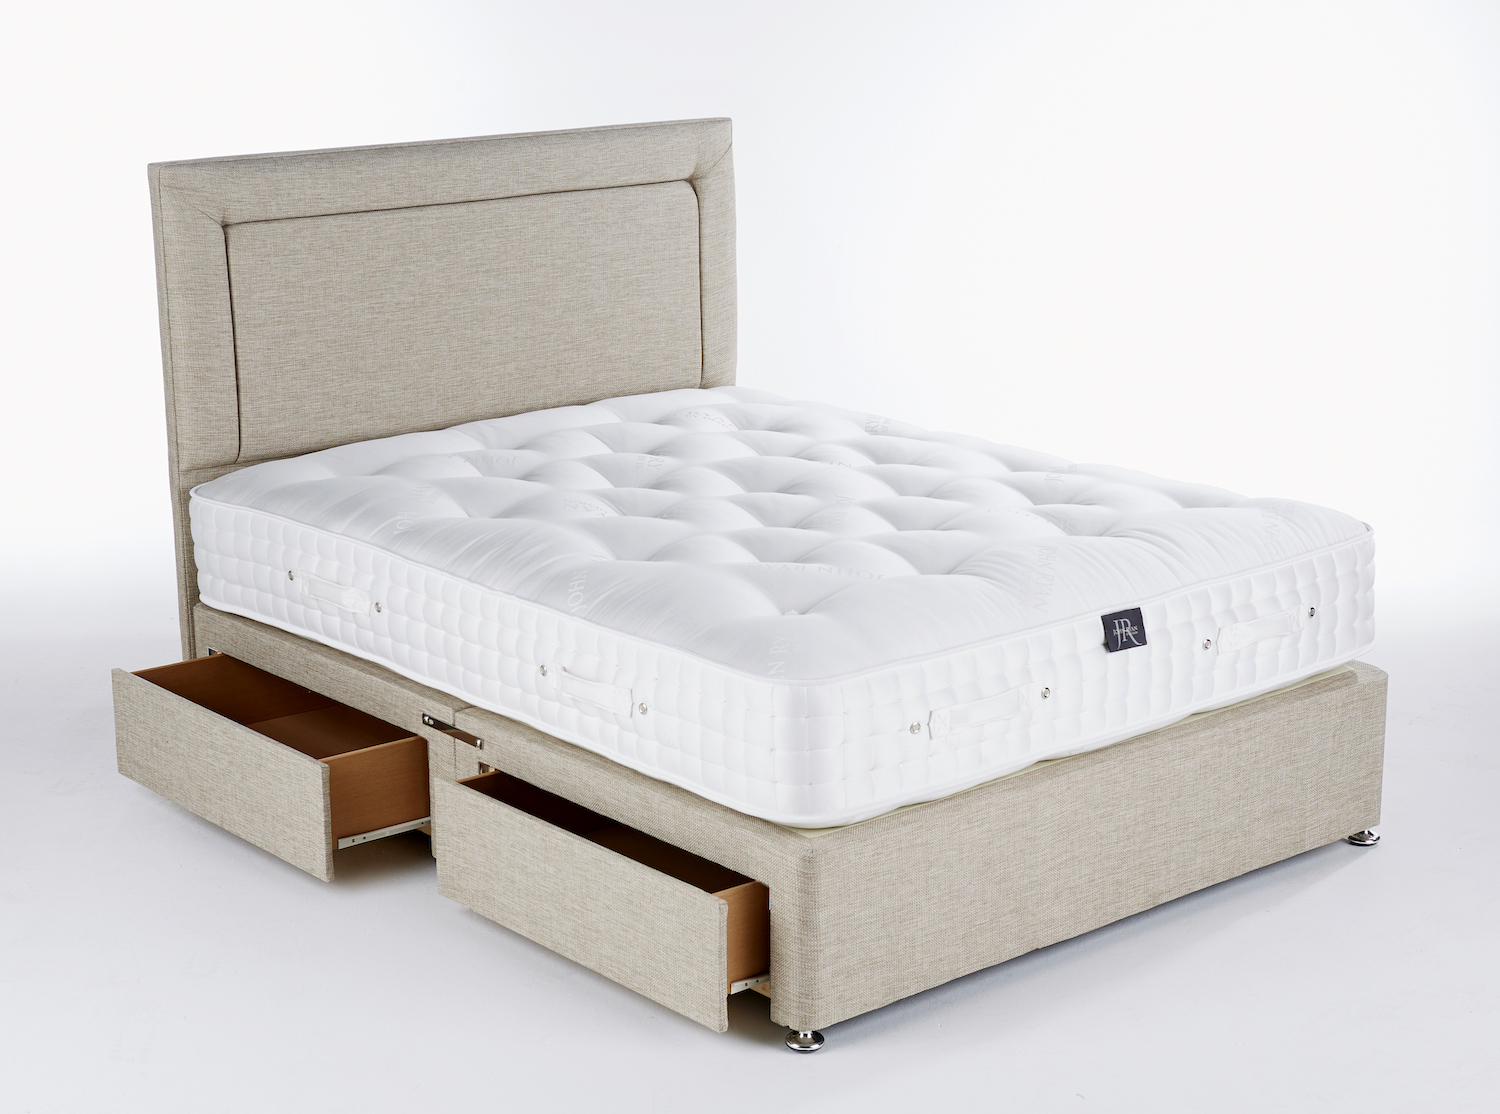 Pocket sprung mattress on a divan bed base